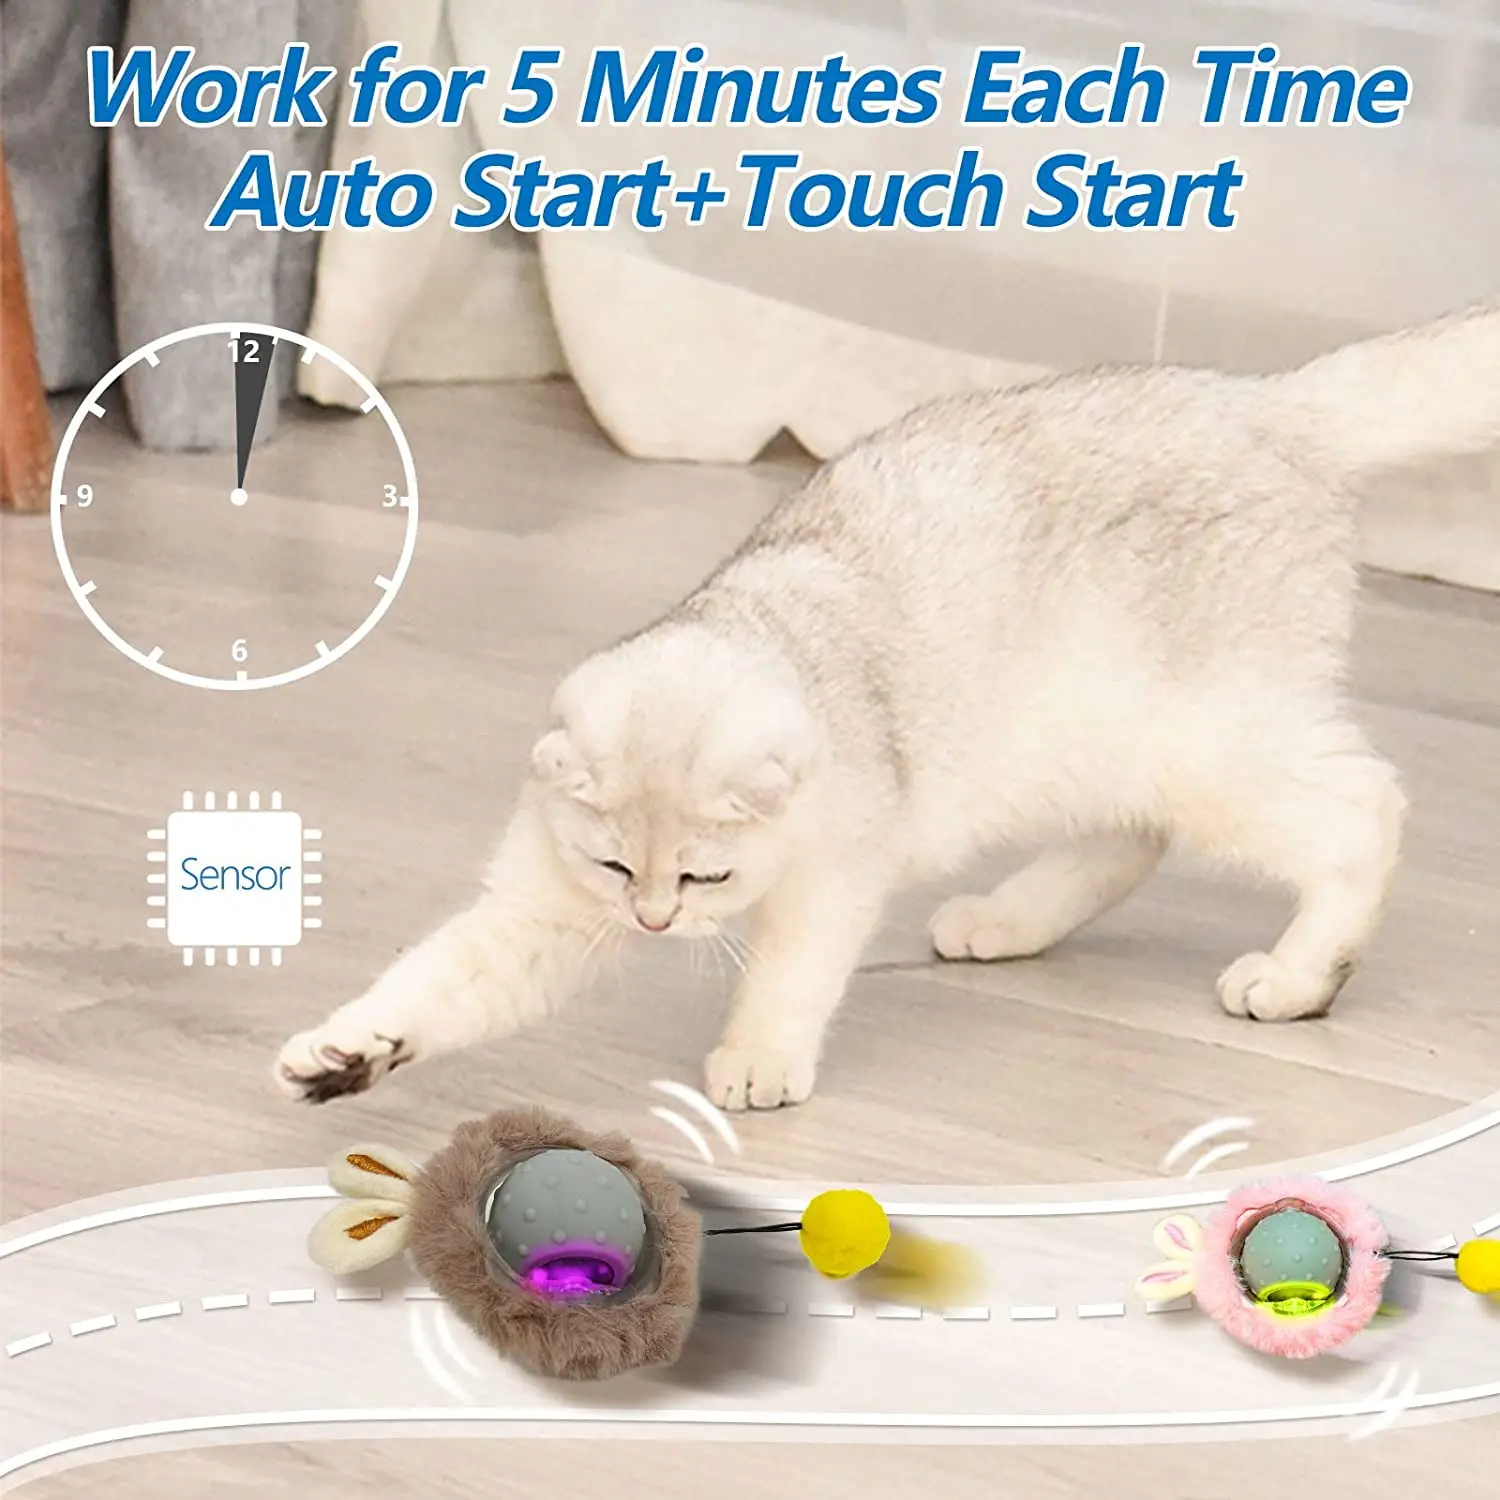 Как сделать игрушку для кошки своими руками?